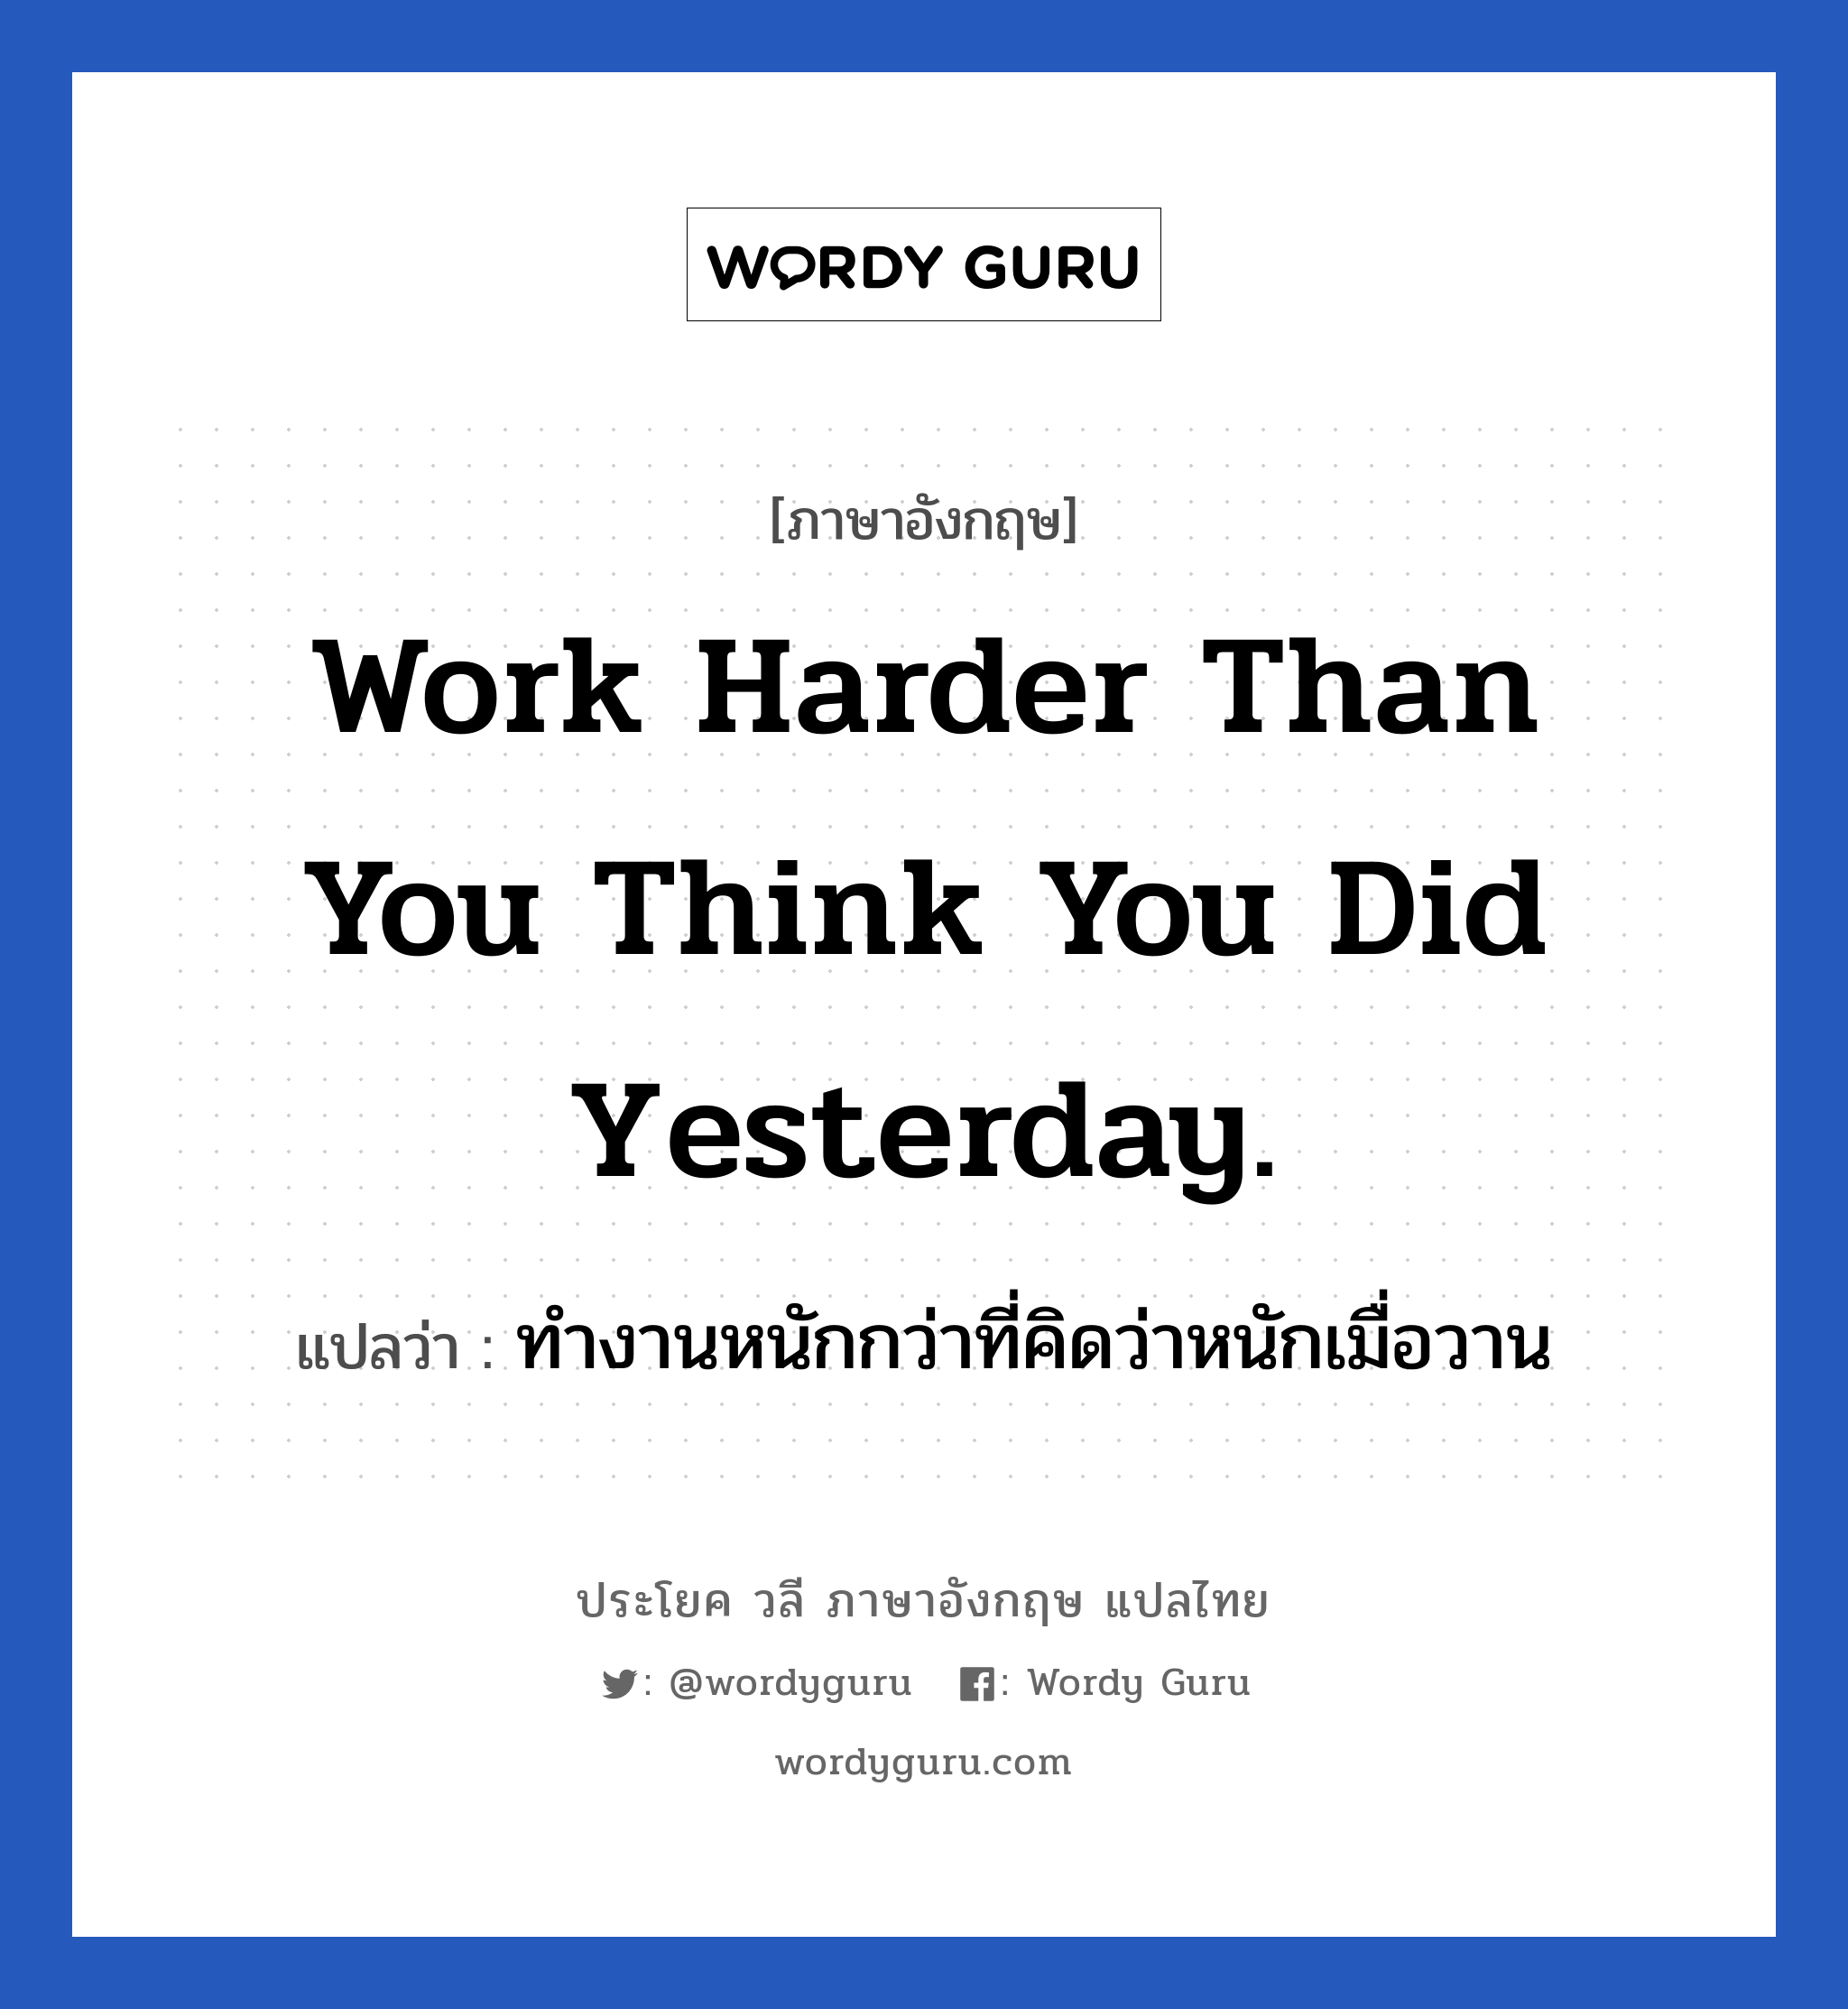 ทำงานหนักกว่าที่คิดว่าหนักเมื่อวาน ภาษาอังกฤษ?, วลีภาษาอังกฤษ ทำงานหนักกว่าที่คิดว่าหนักเมื่อวาน แปลว่า Work harder than you think you did yesterday. หมวด ในที่ทำงาน